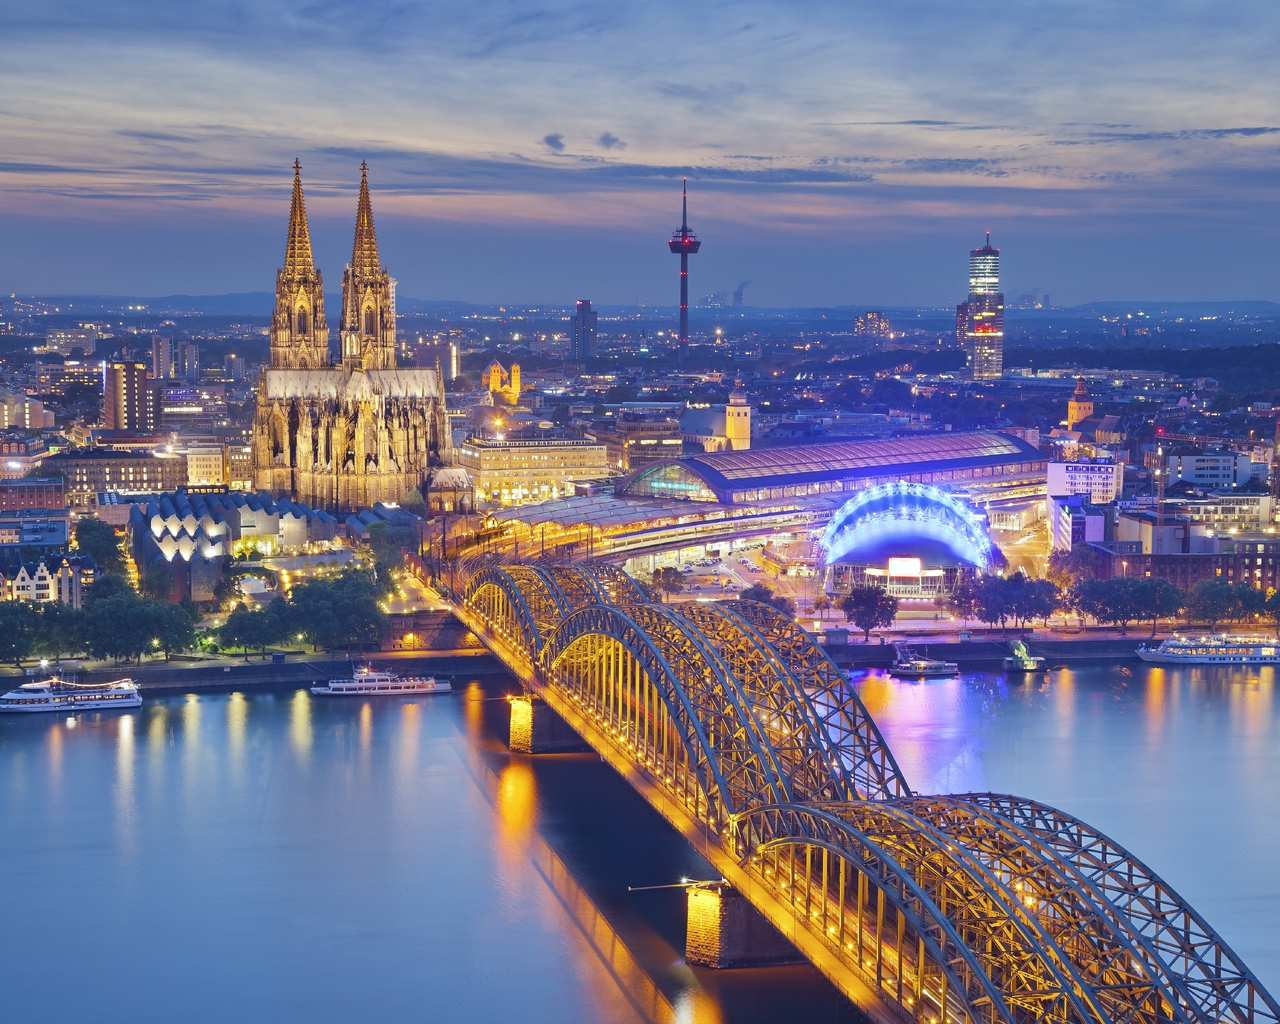 Картинка: Город, вечер, Кёльн, Германия, река, мост, вид